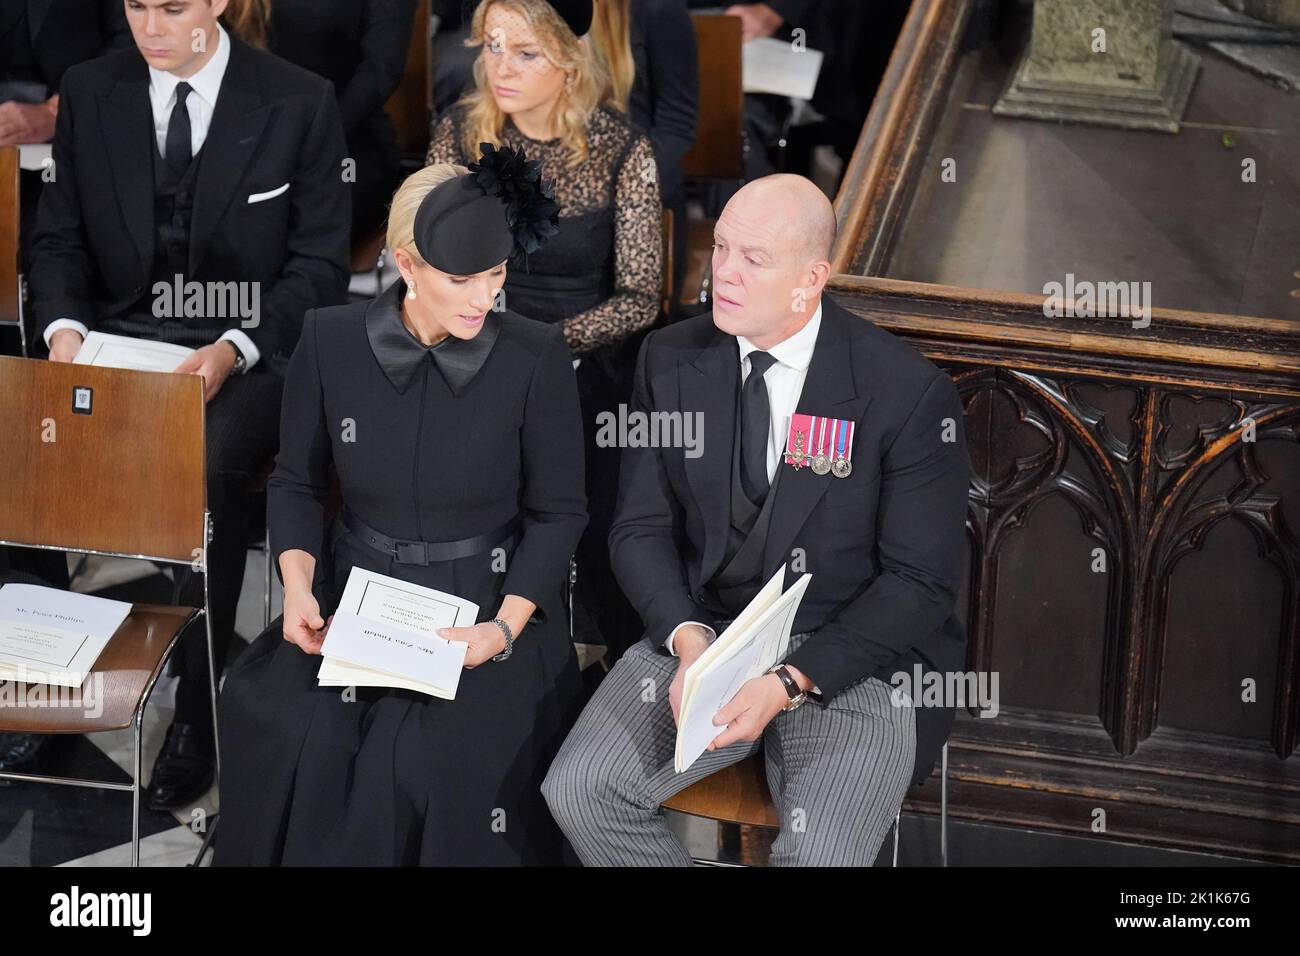 Mike Tindall e Zara Tindall al funerale statale della regina Elisabetta II, tenutosi all'Abbazia di Westminster, Londra. Data immagine: Lunedì 19 settembre 2022. Foto Stock